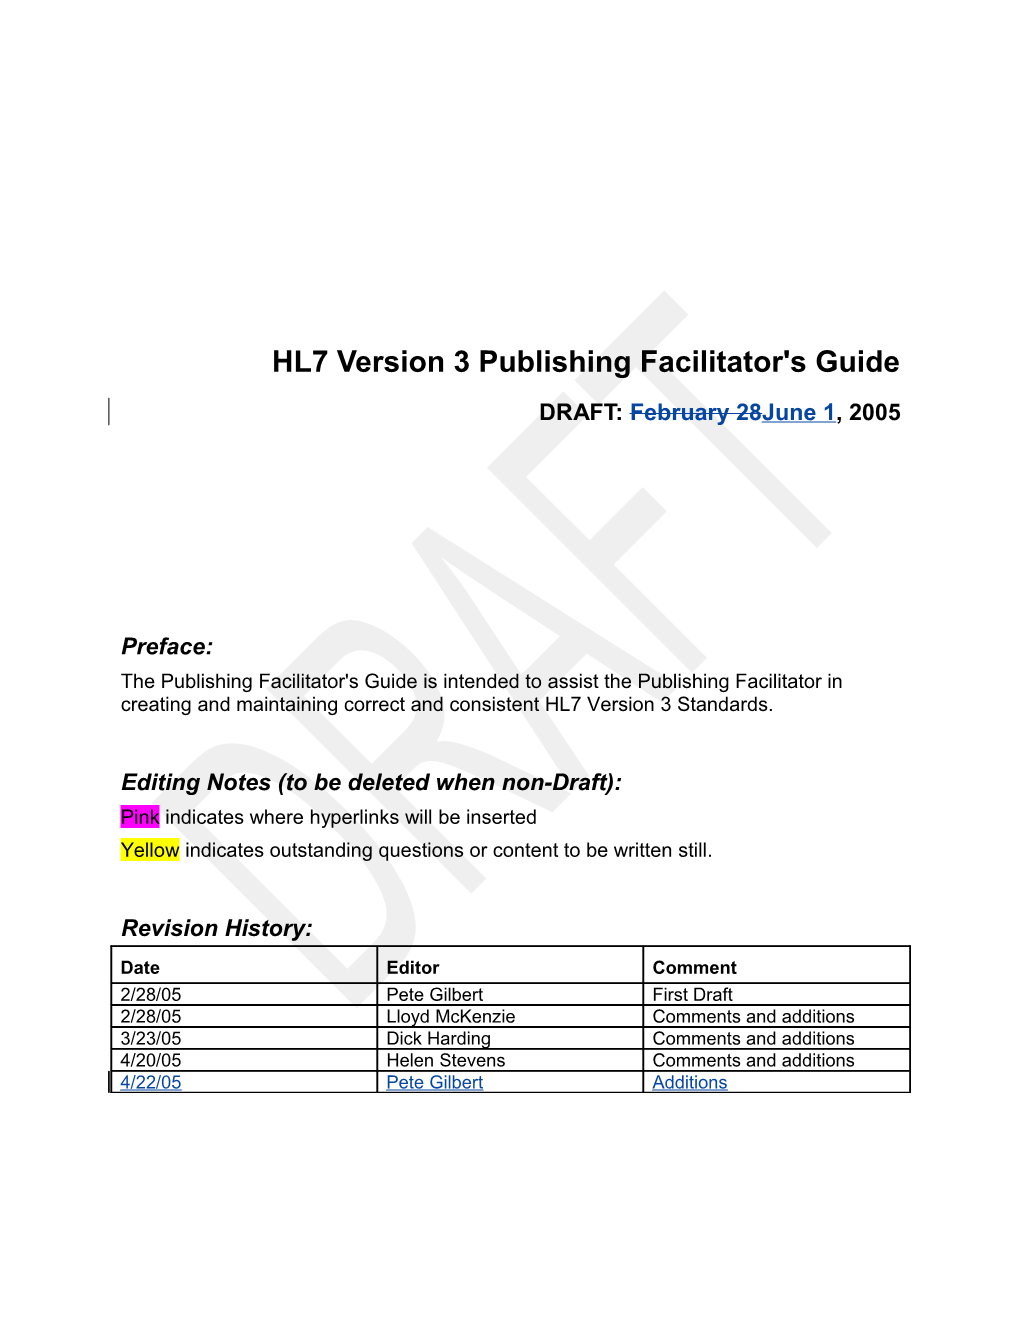 HL7 Publishing Facilitator's Guide